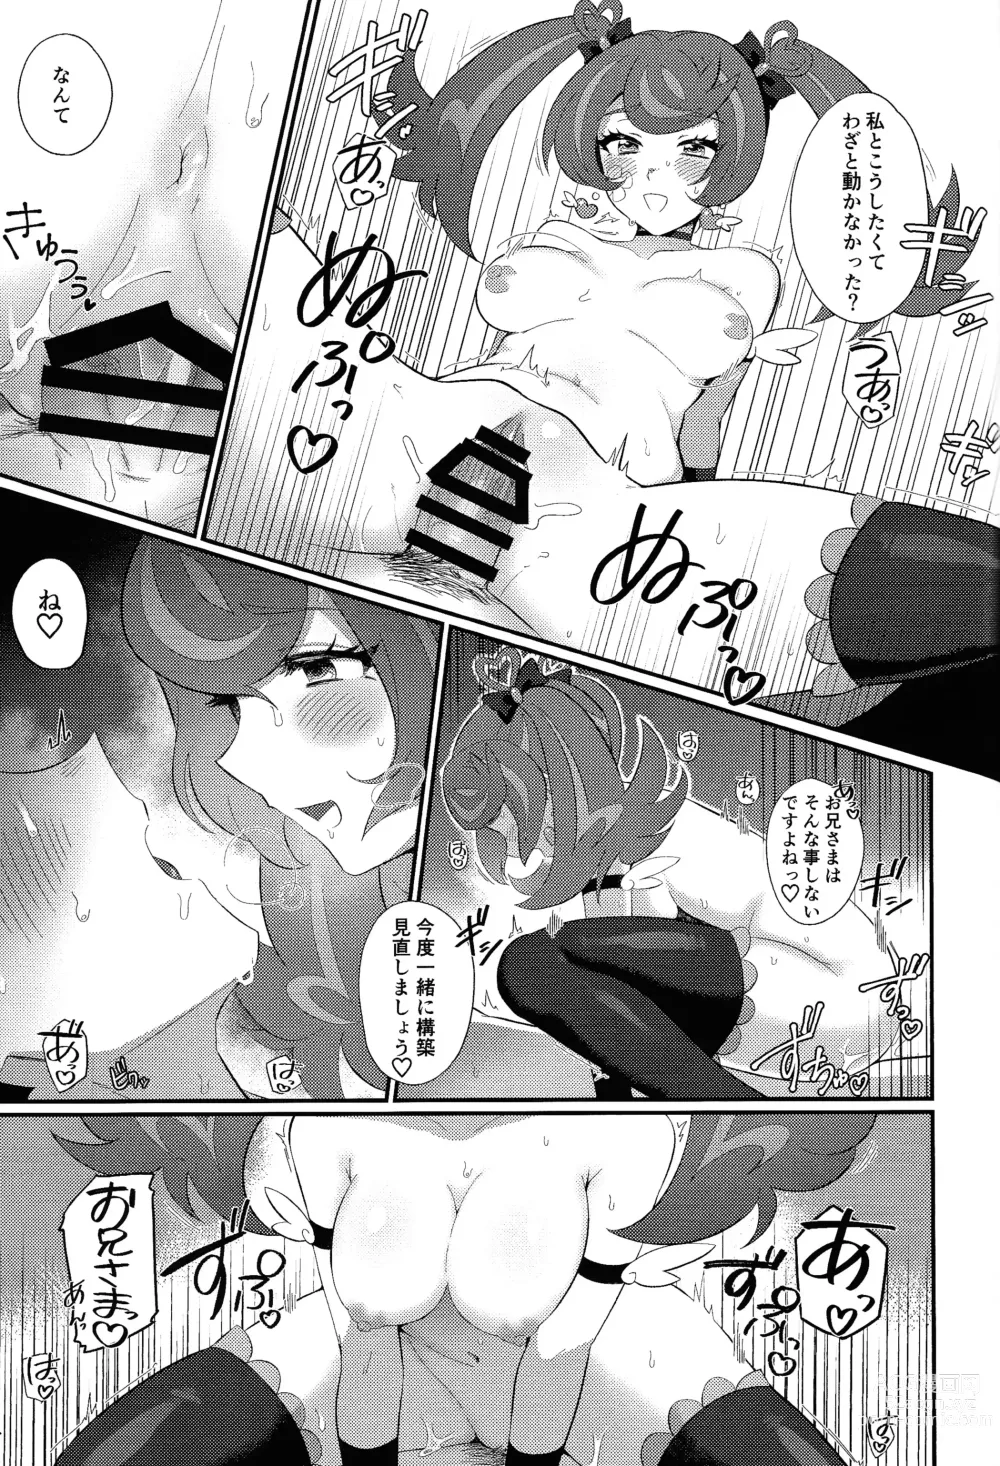 Page 26 of doujinshi Sotsugyo shite kara no o tanoshimi